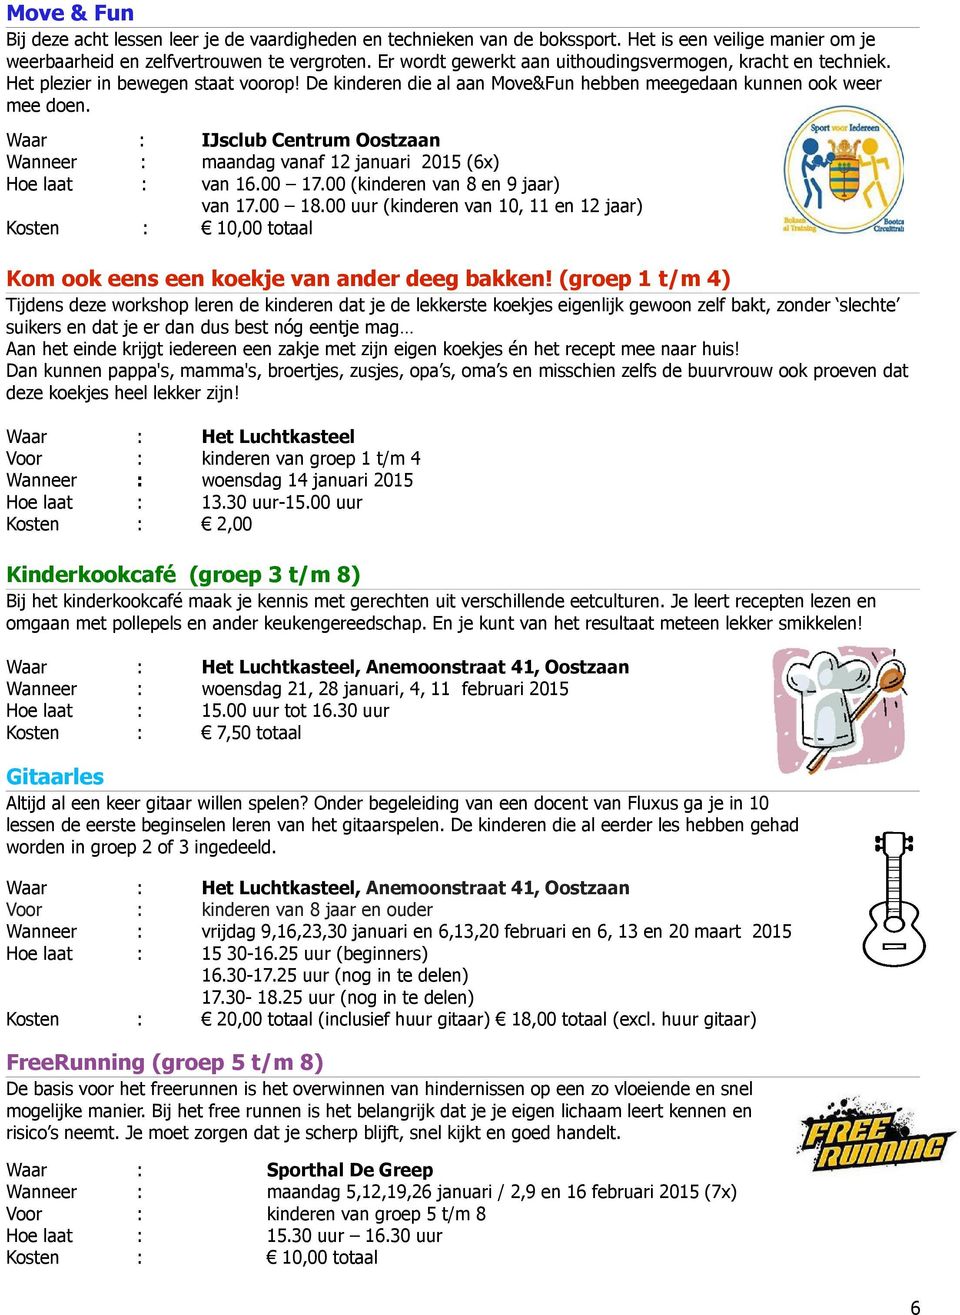 Waar : IJsclub Centrum Oostzaan Wanneer : maandag vanaf 12 januari 2015 (6x) Hoe laat : van 16.00 17.00 (kinderen van 8 en 9 jaar) van 17.00 18.